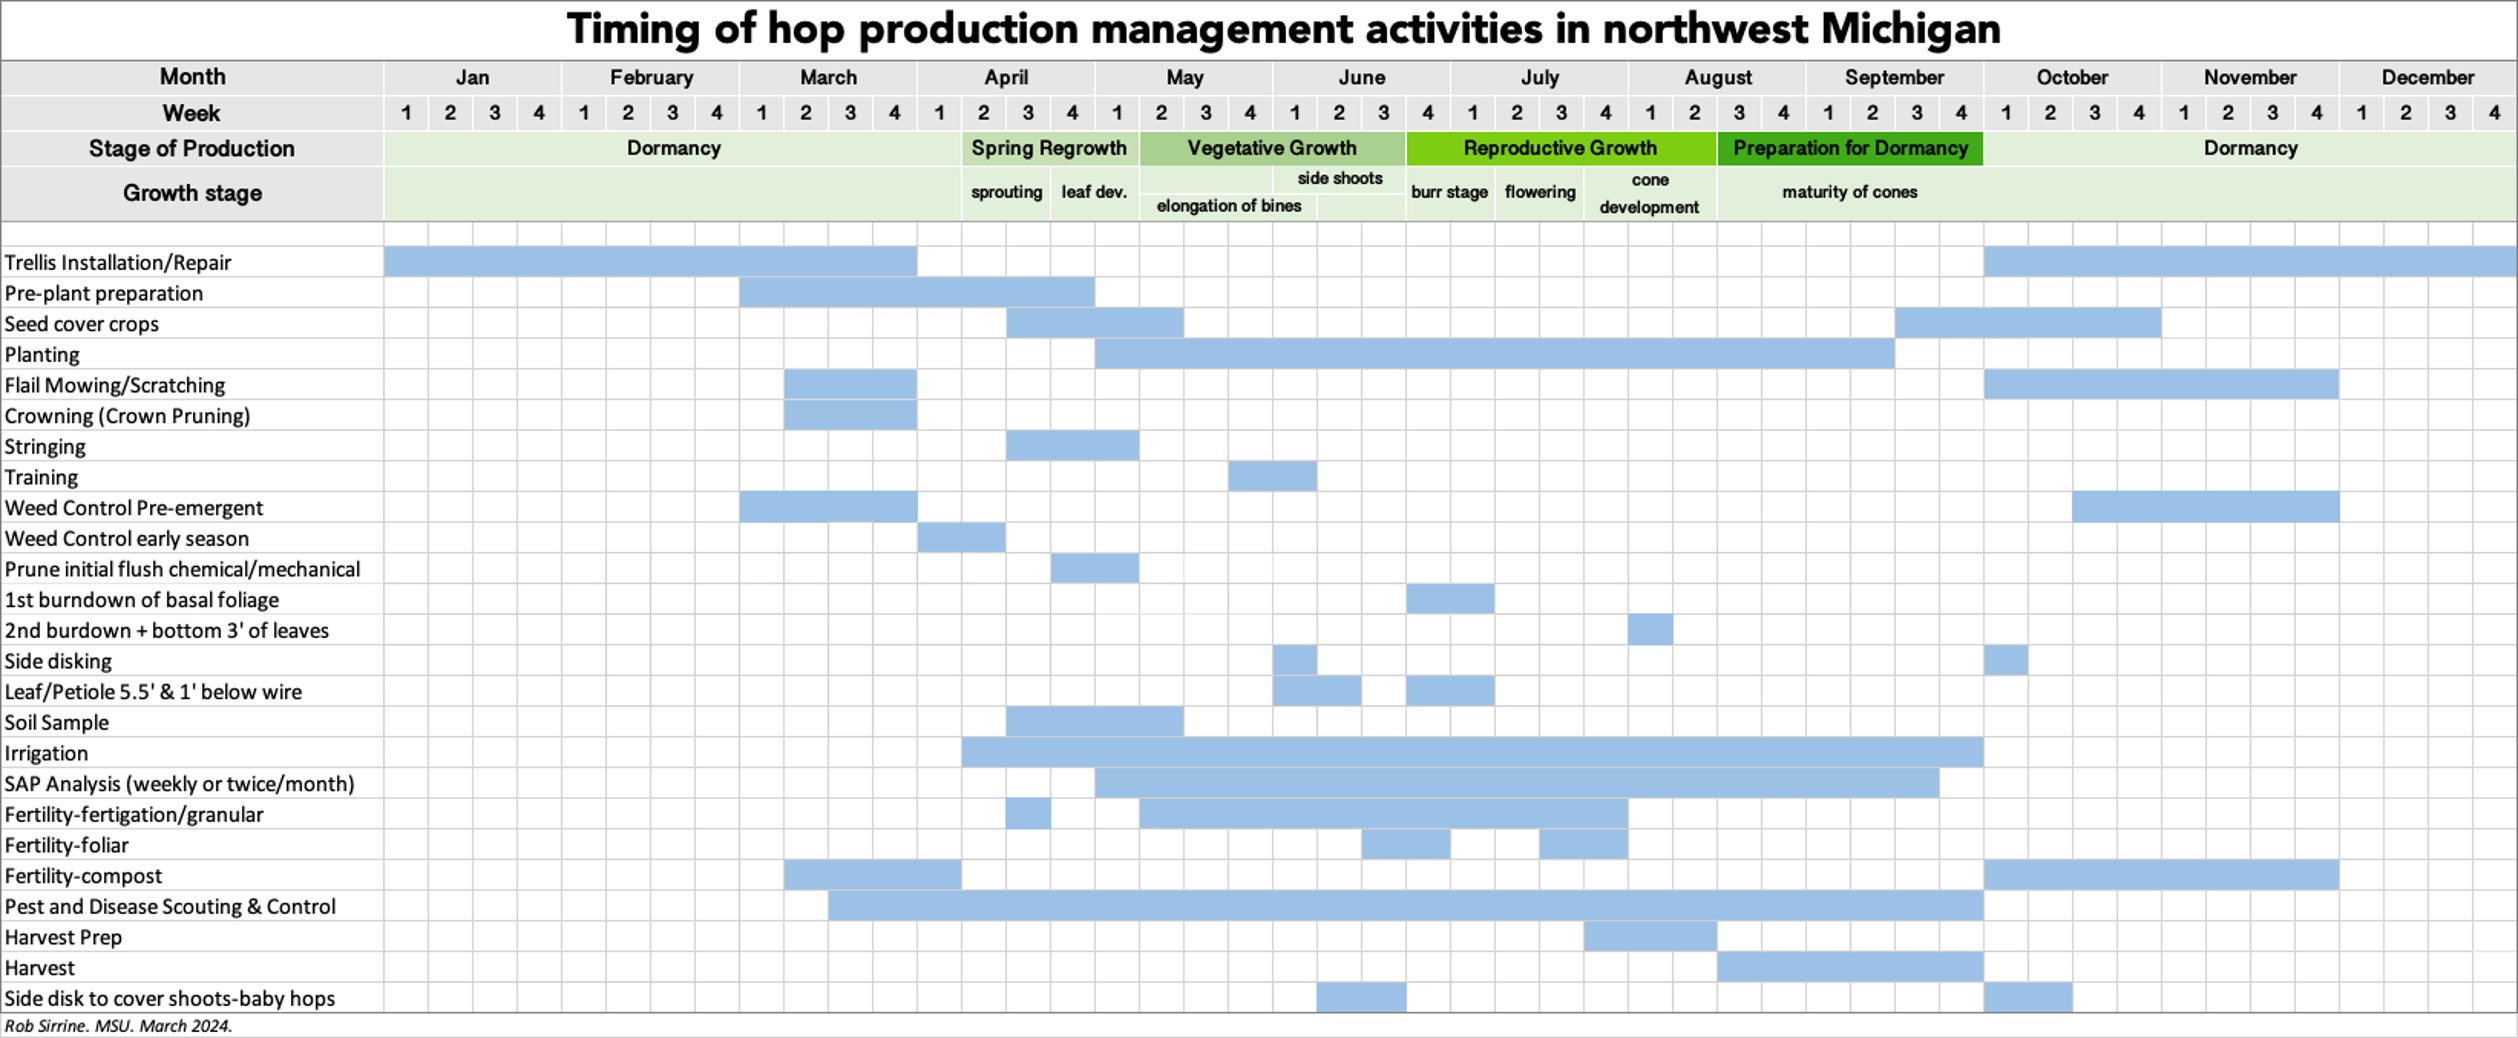 Timing of hop management activities in NW MI.jpg